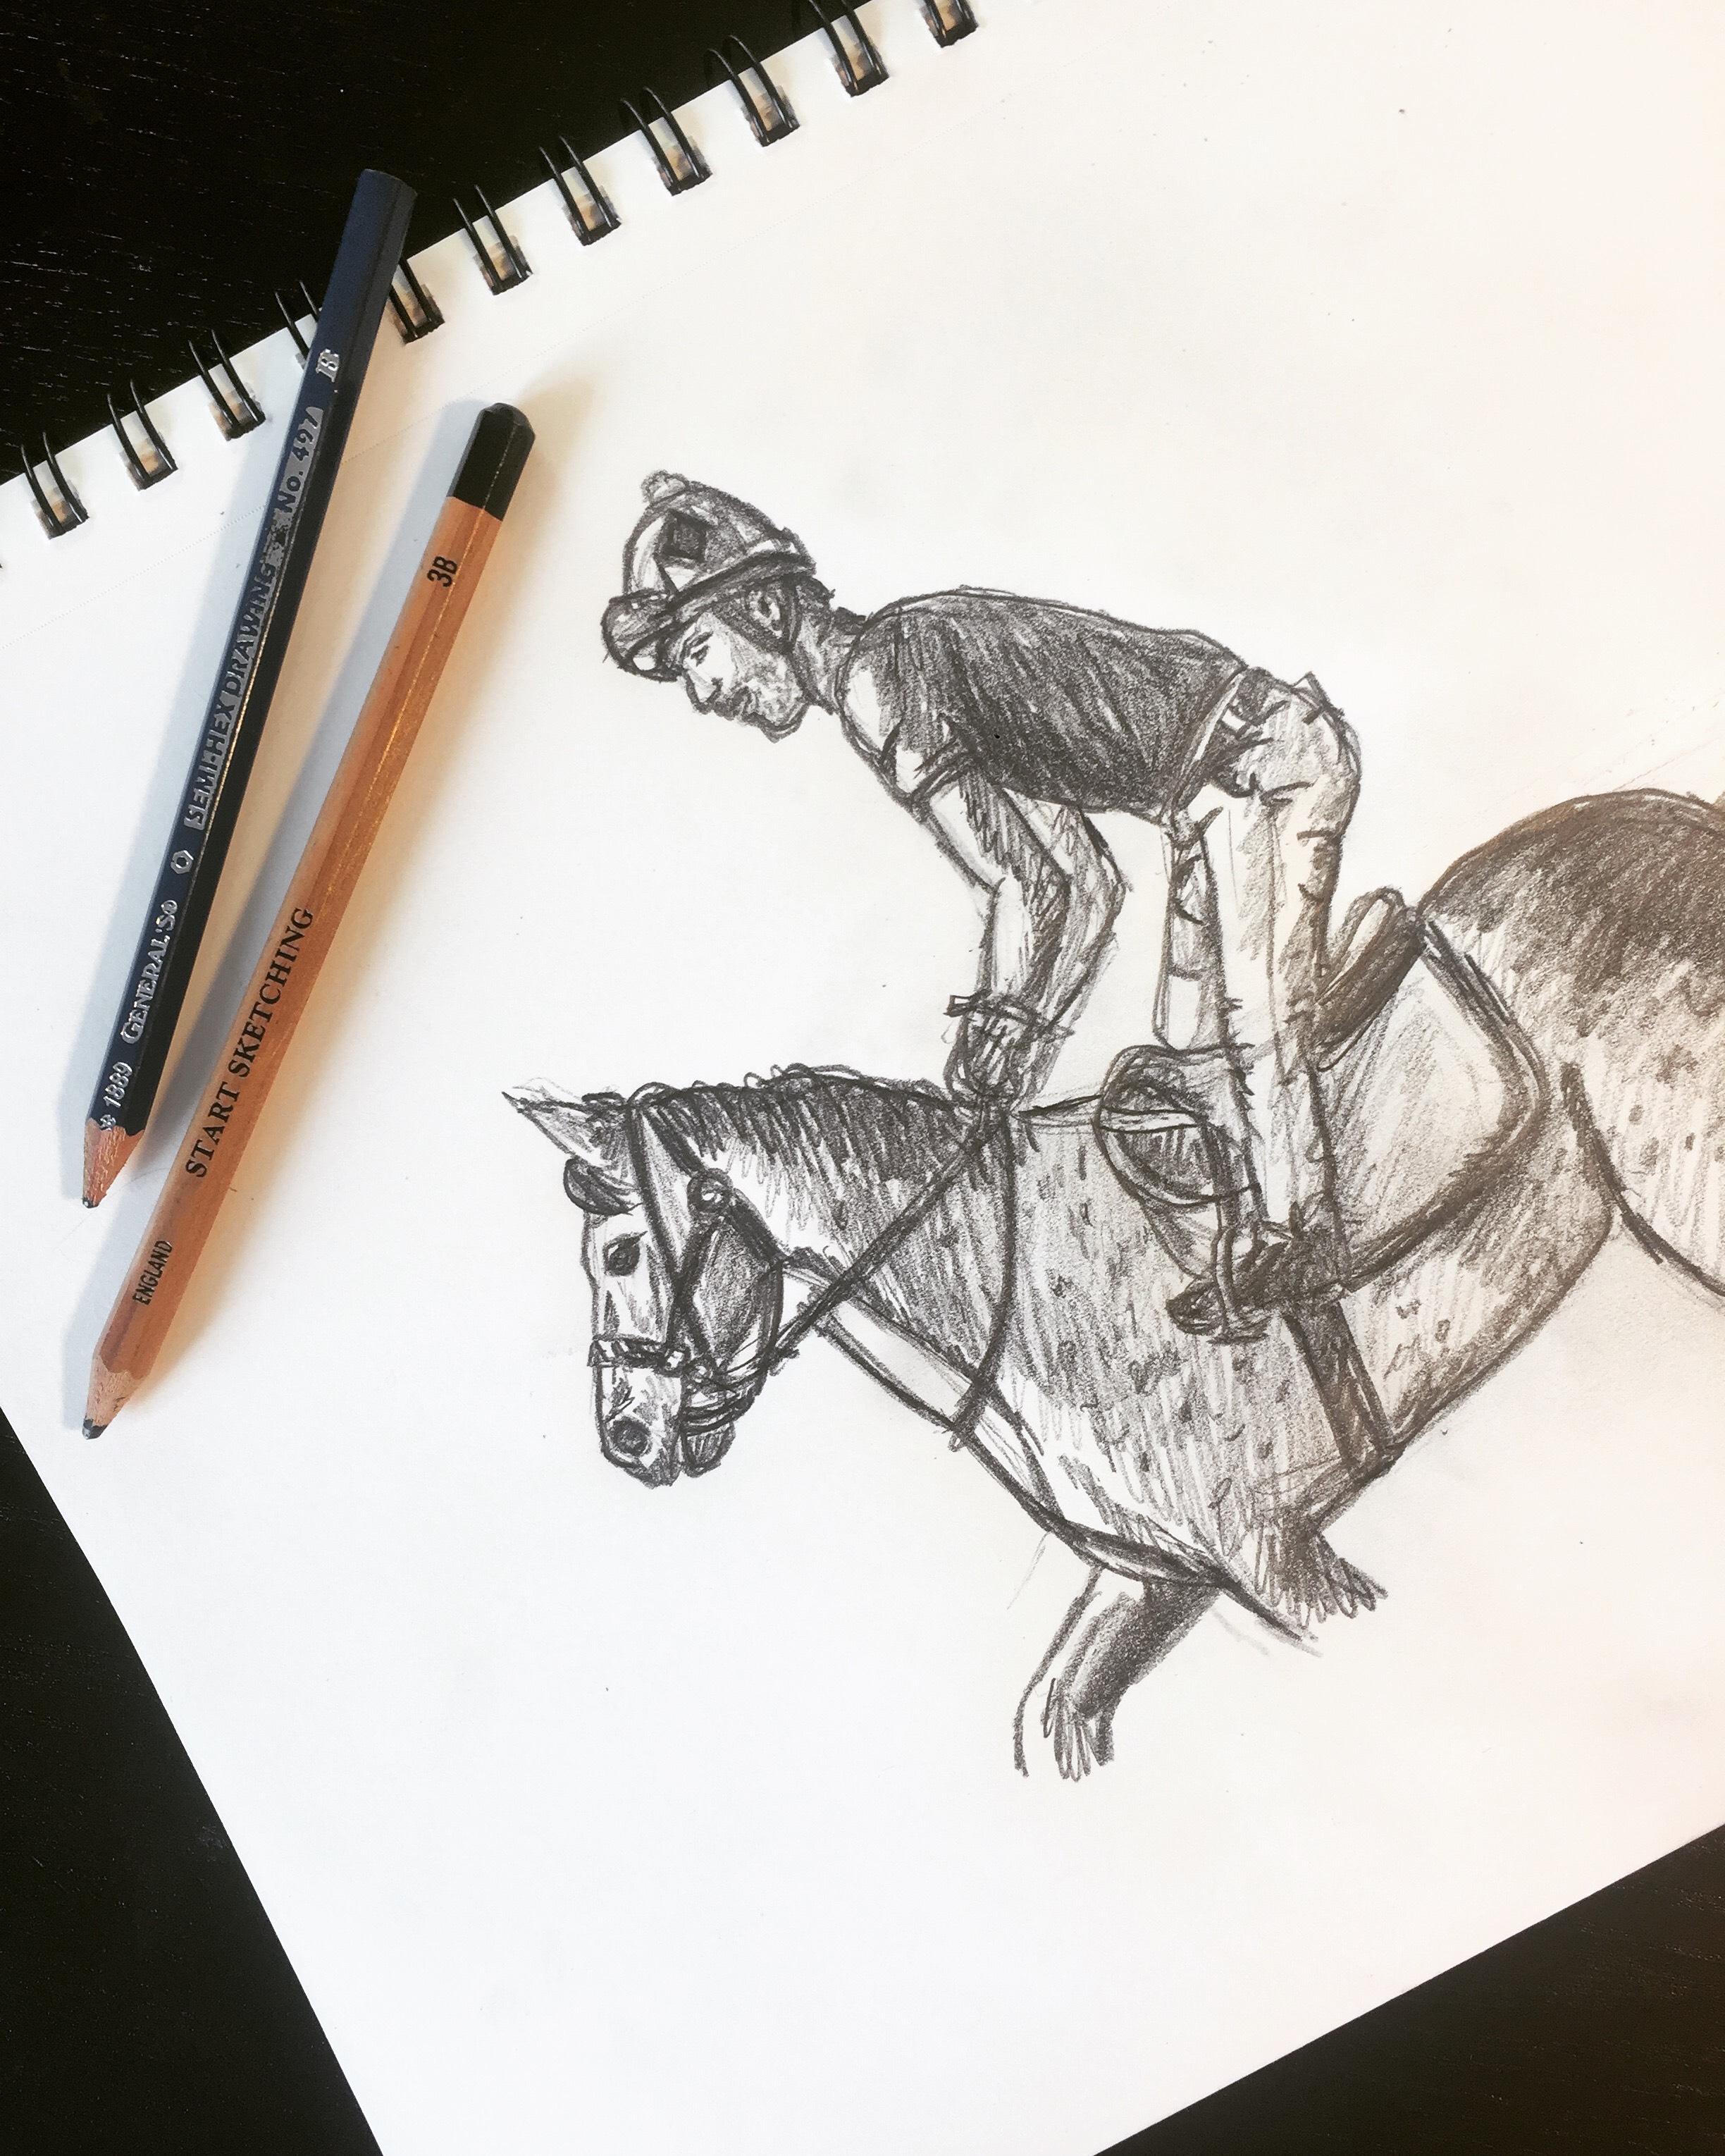 Horse and Jockey